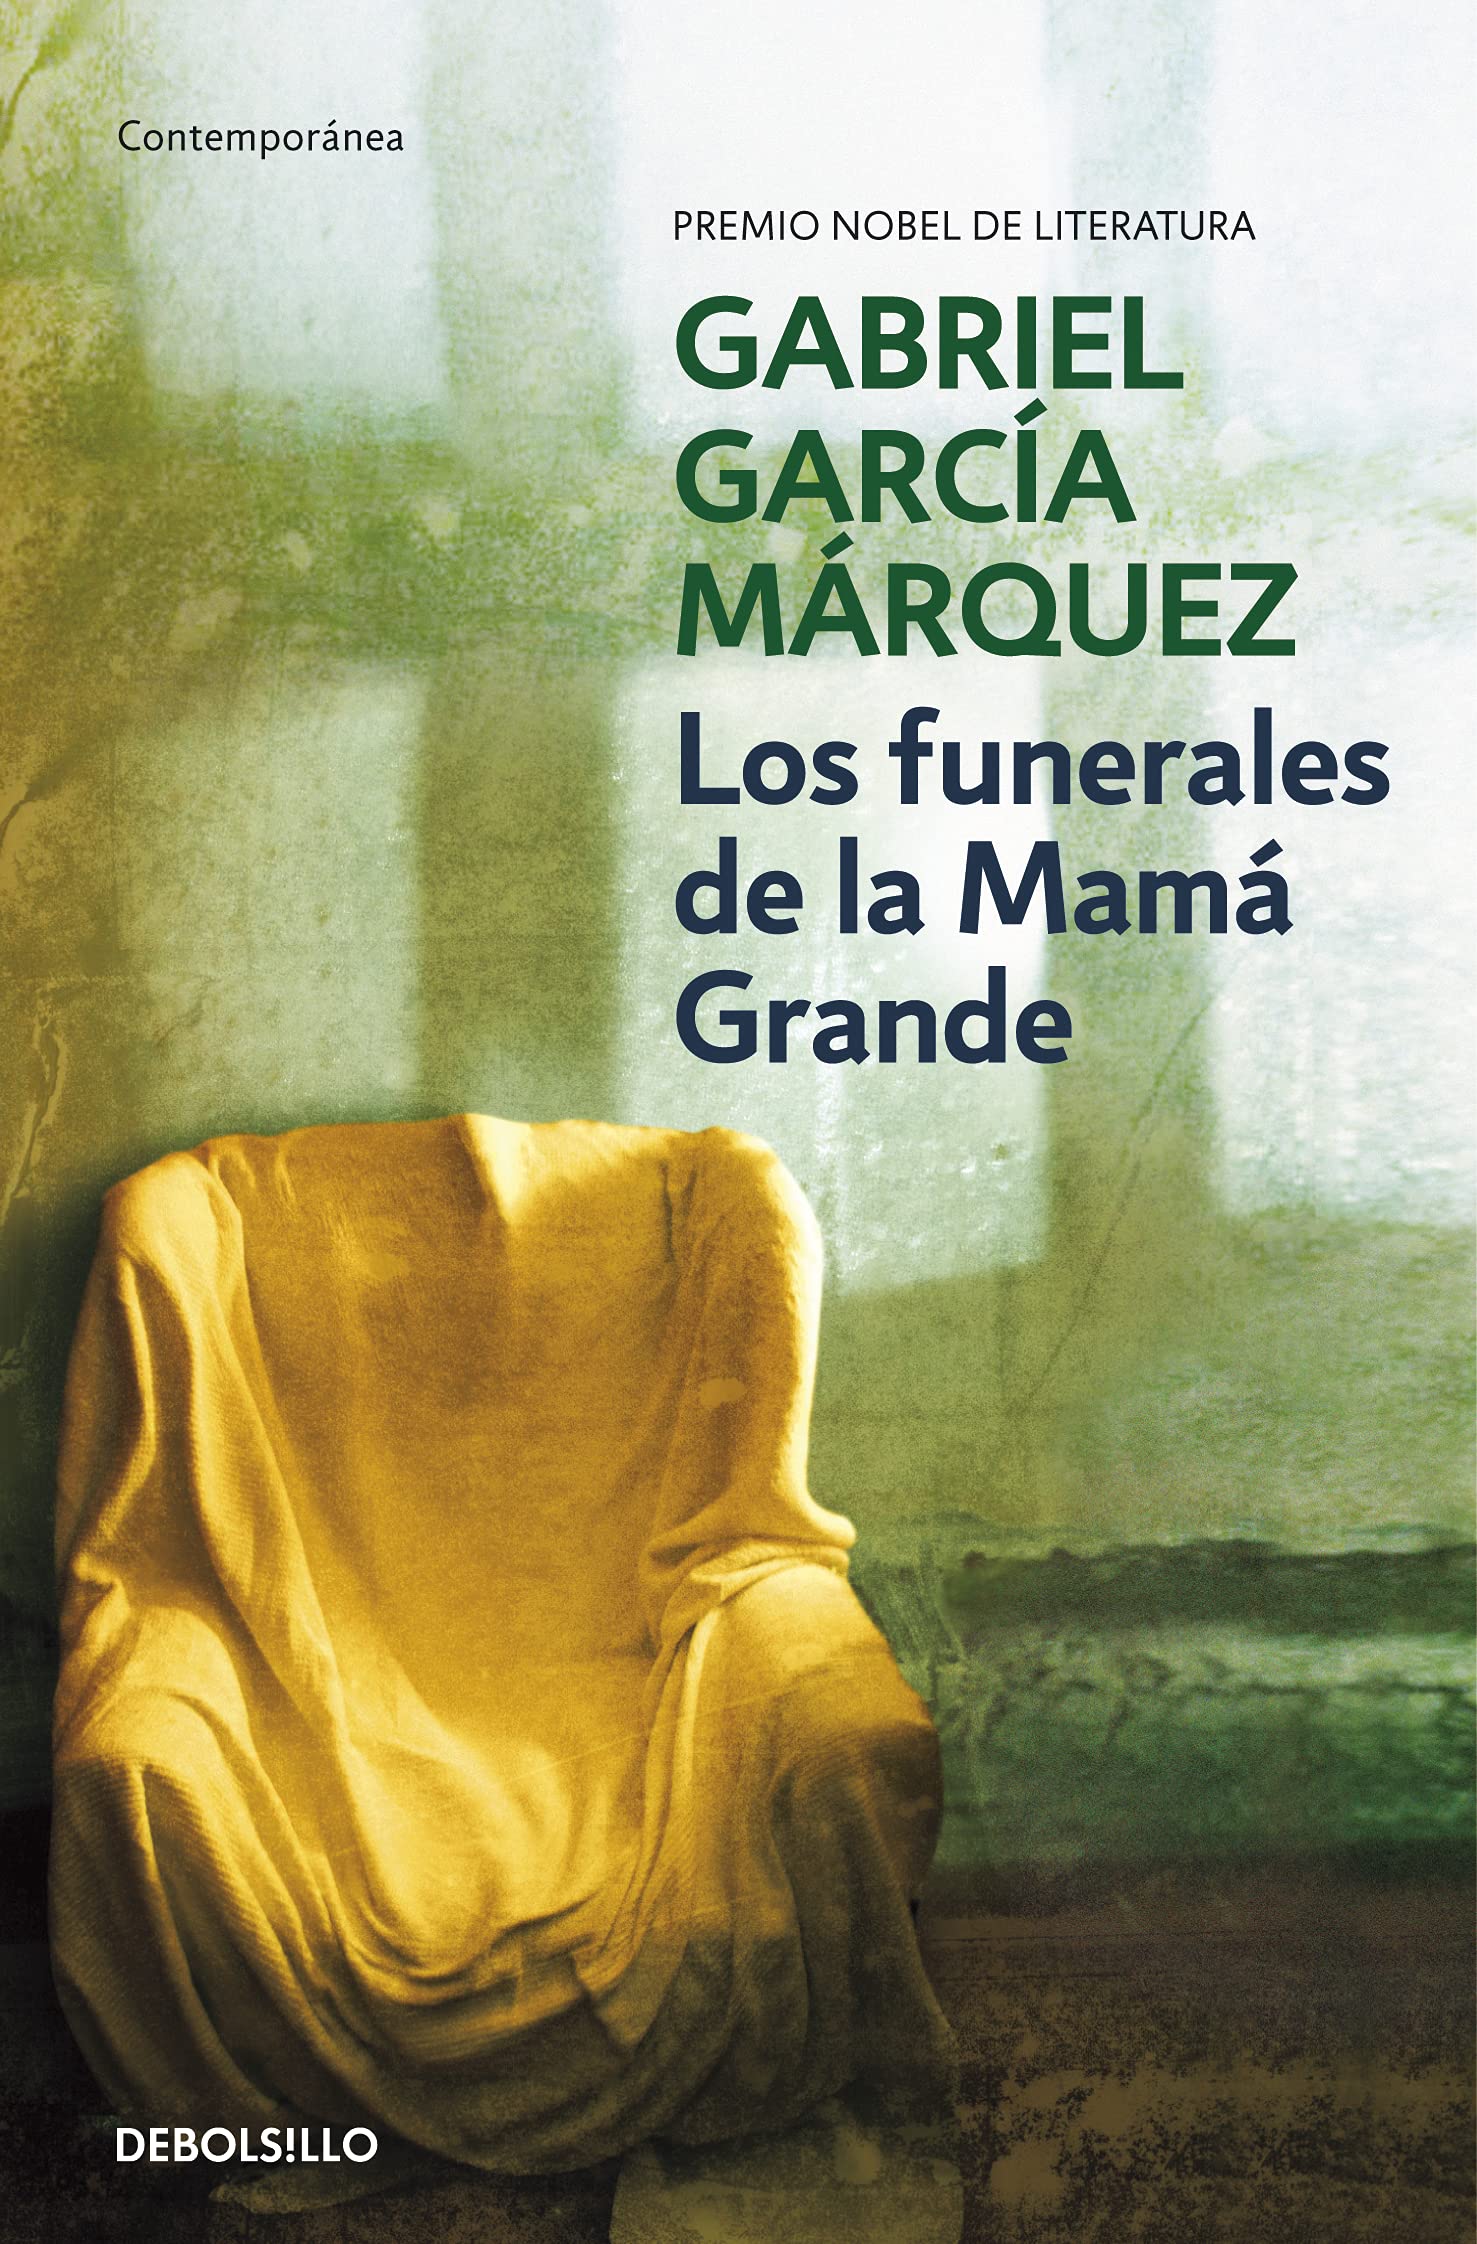 Club de Lectores: Libro: “Los Funerales de Mamá Grande” por Gabriel Garcia Marquez thumbnail Photo